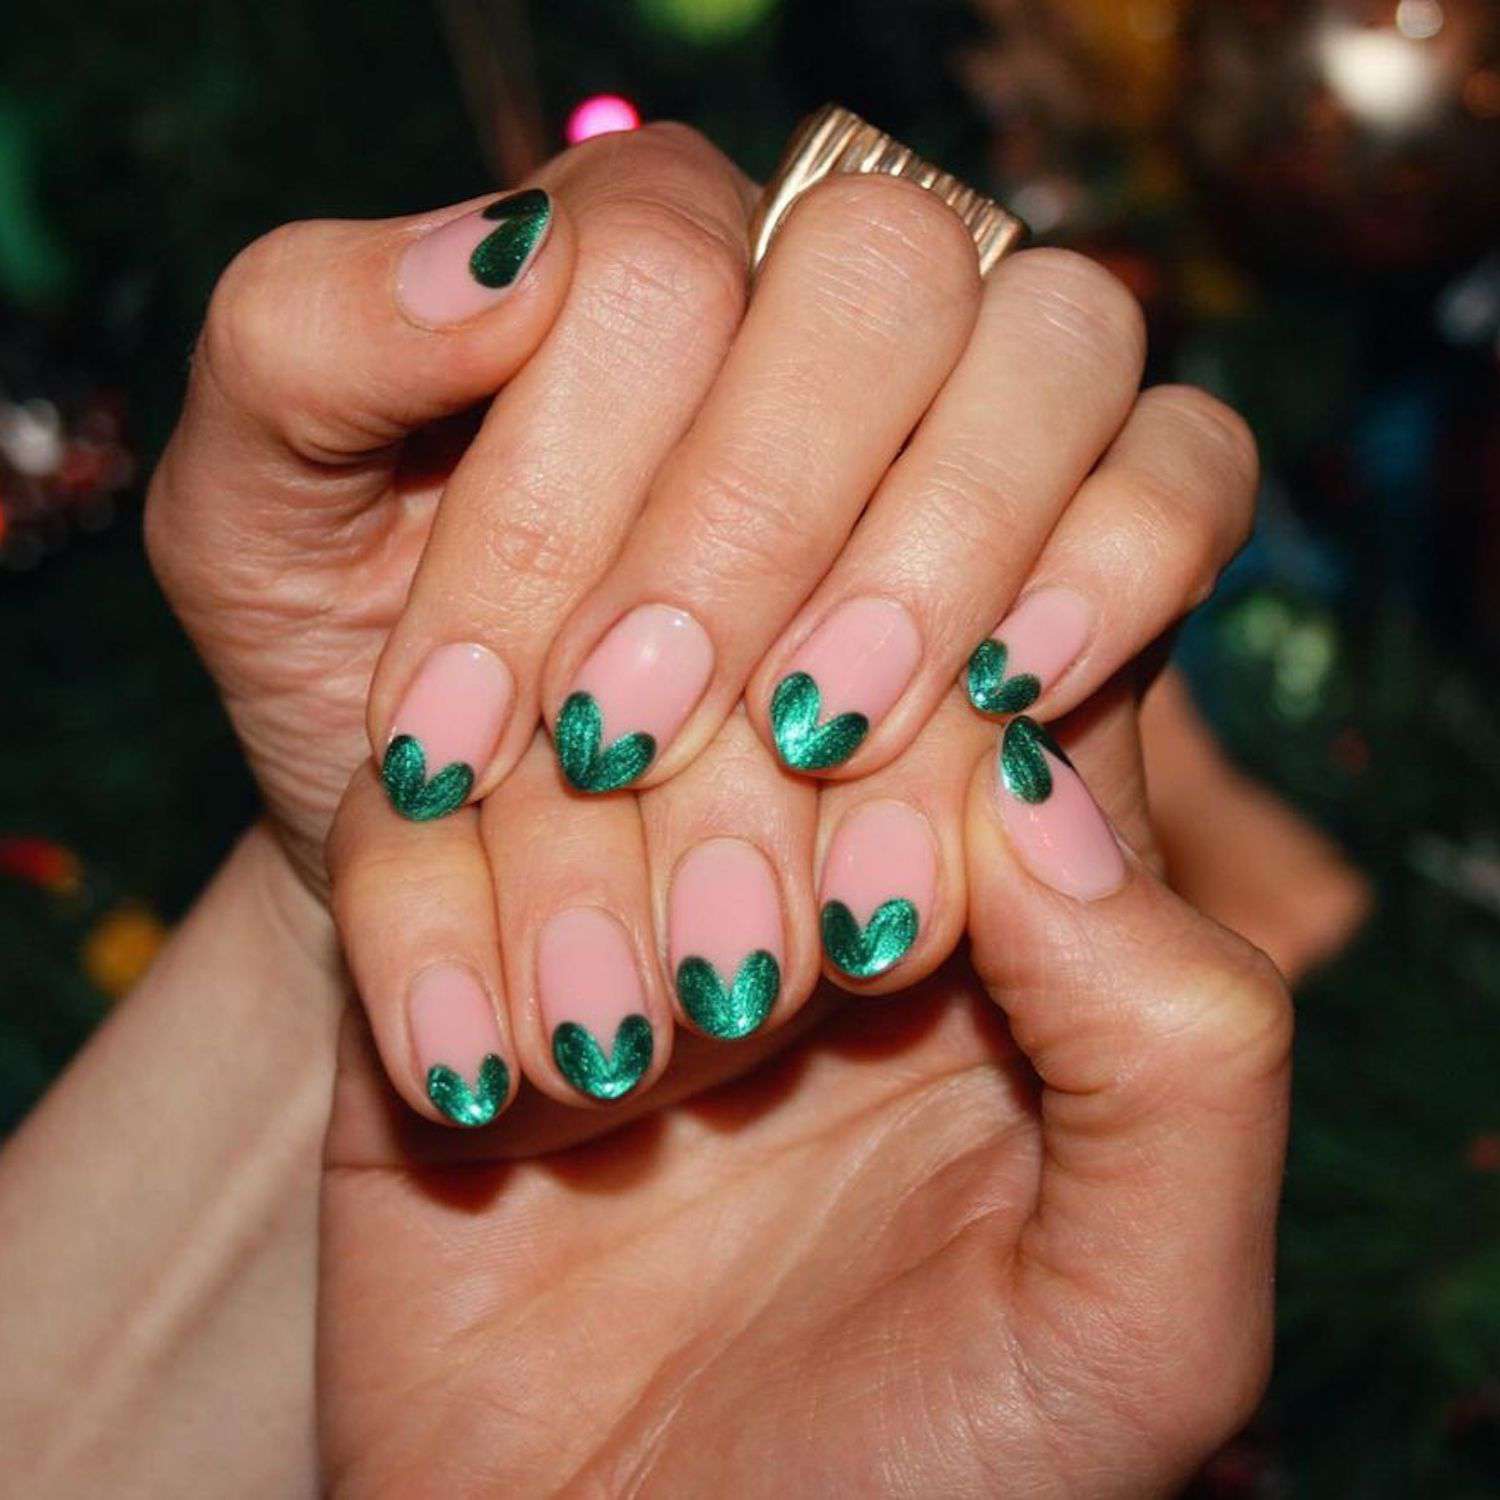 Manicure francesa com corações usando verniz metálico verde escuro